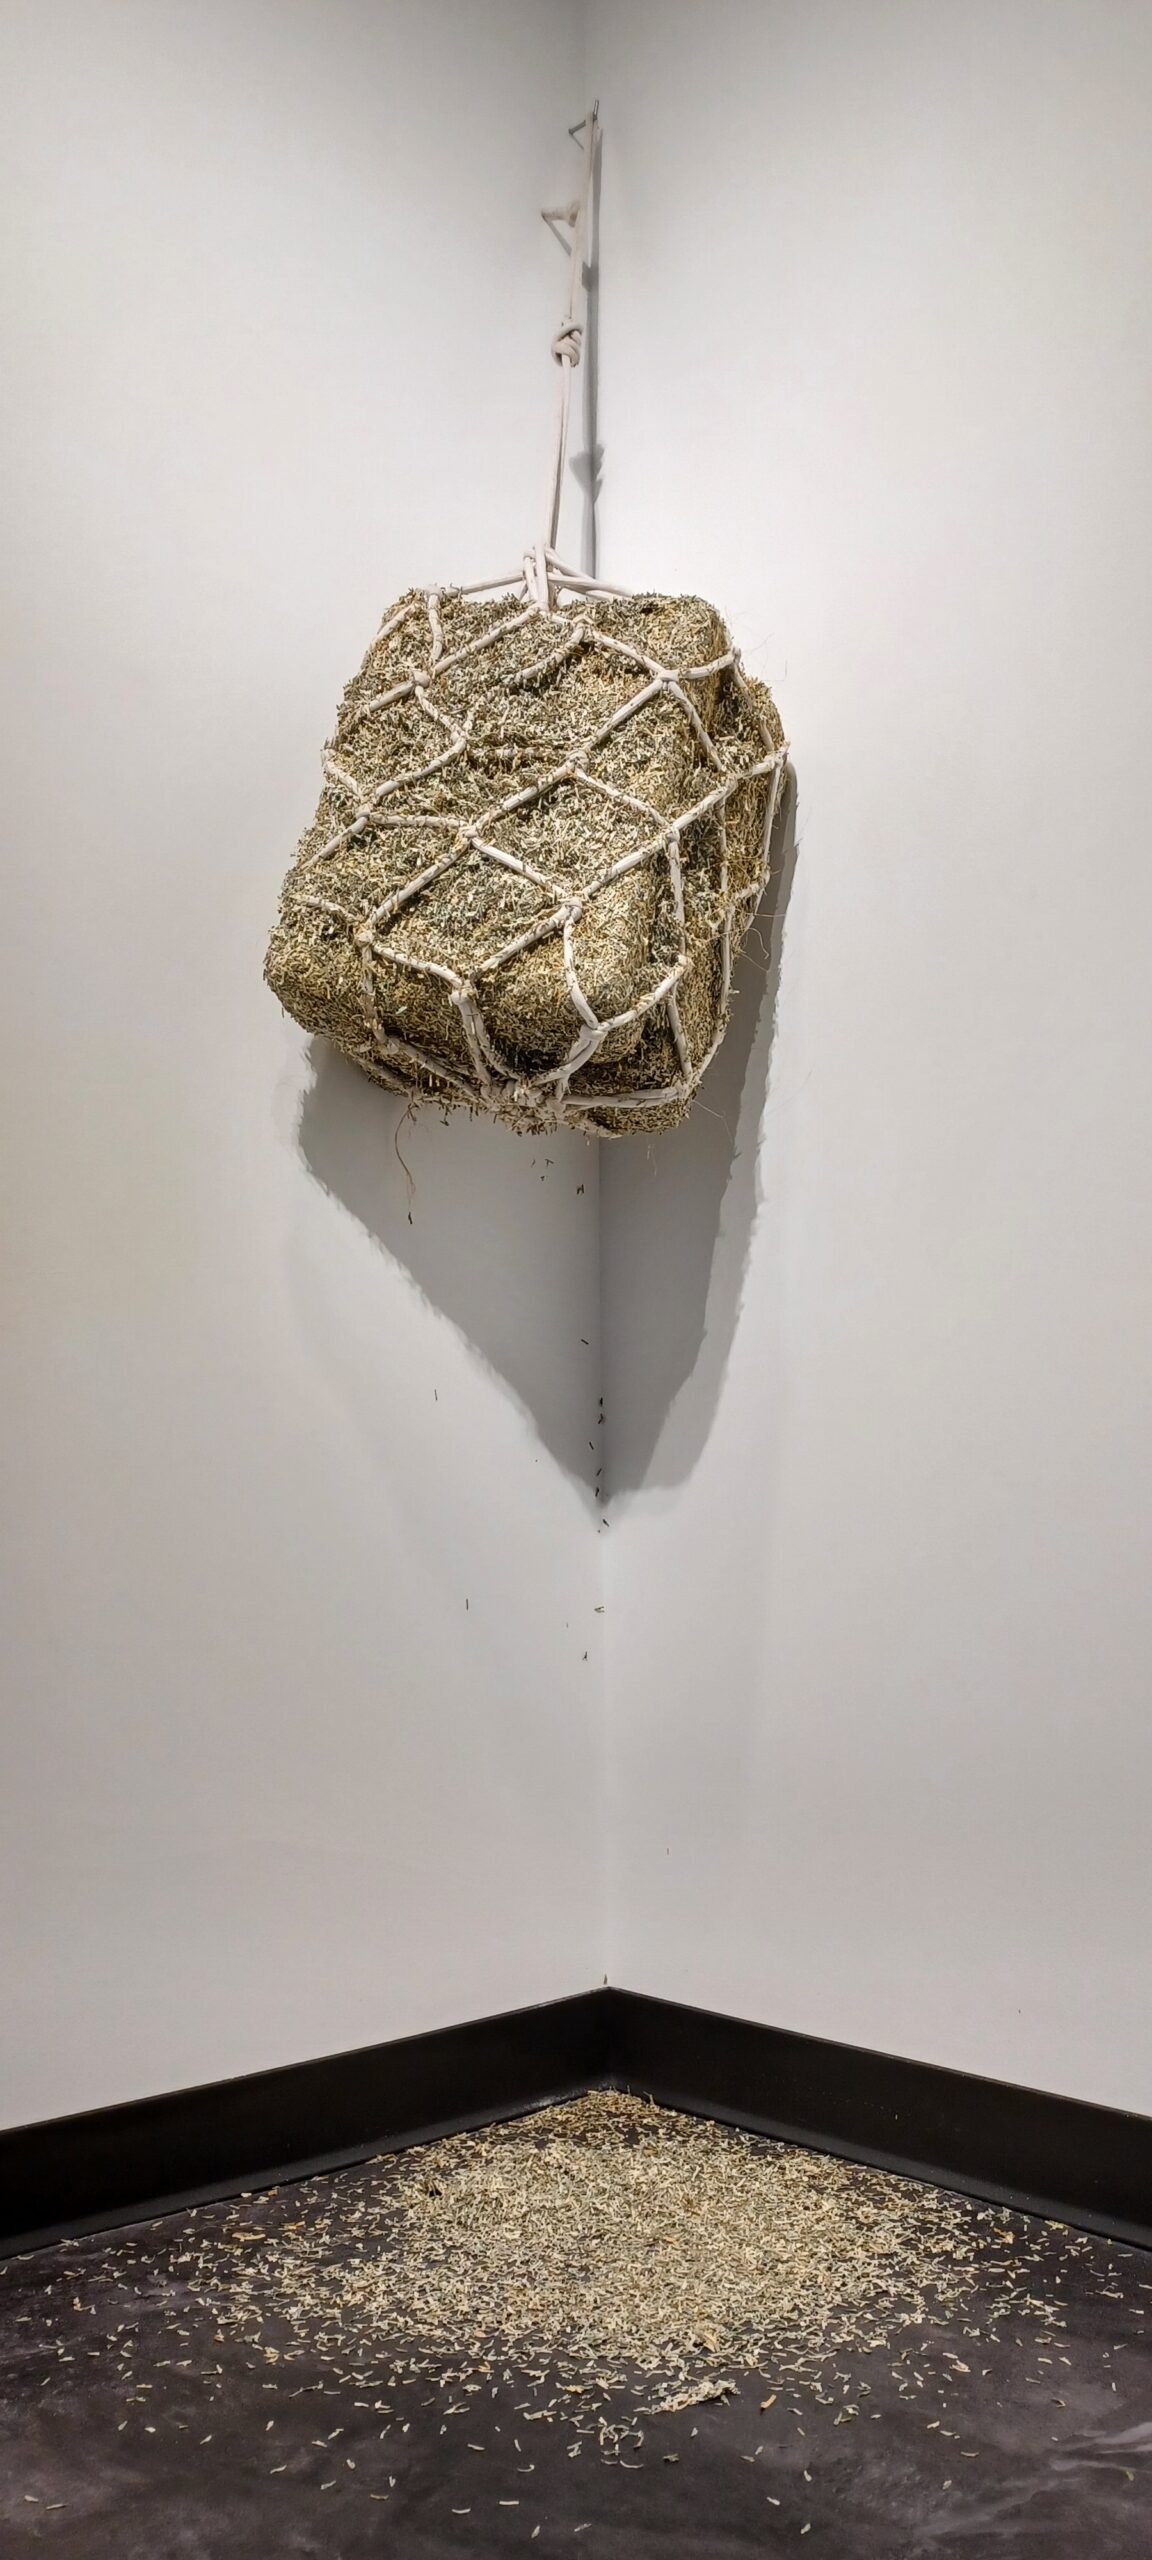 Sculpture of a hay net full of money scraps